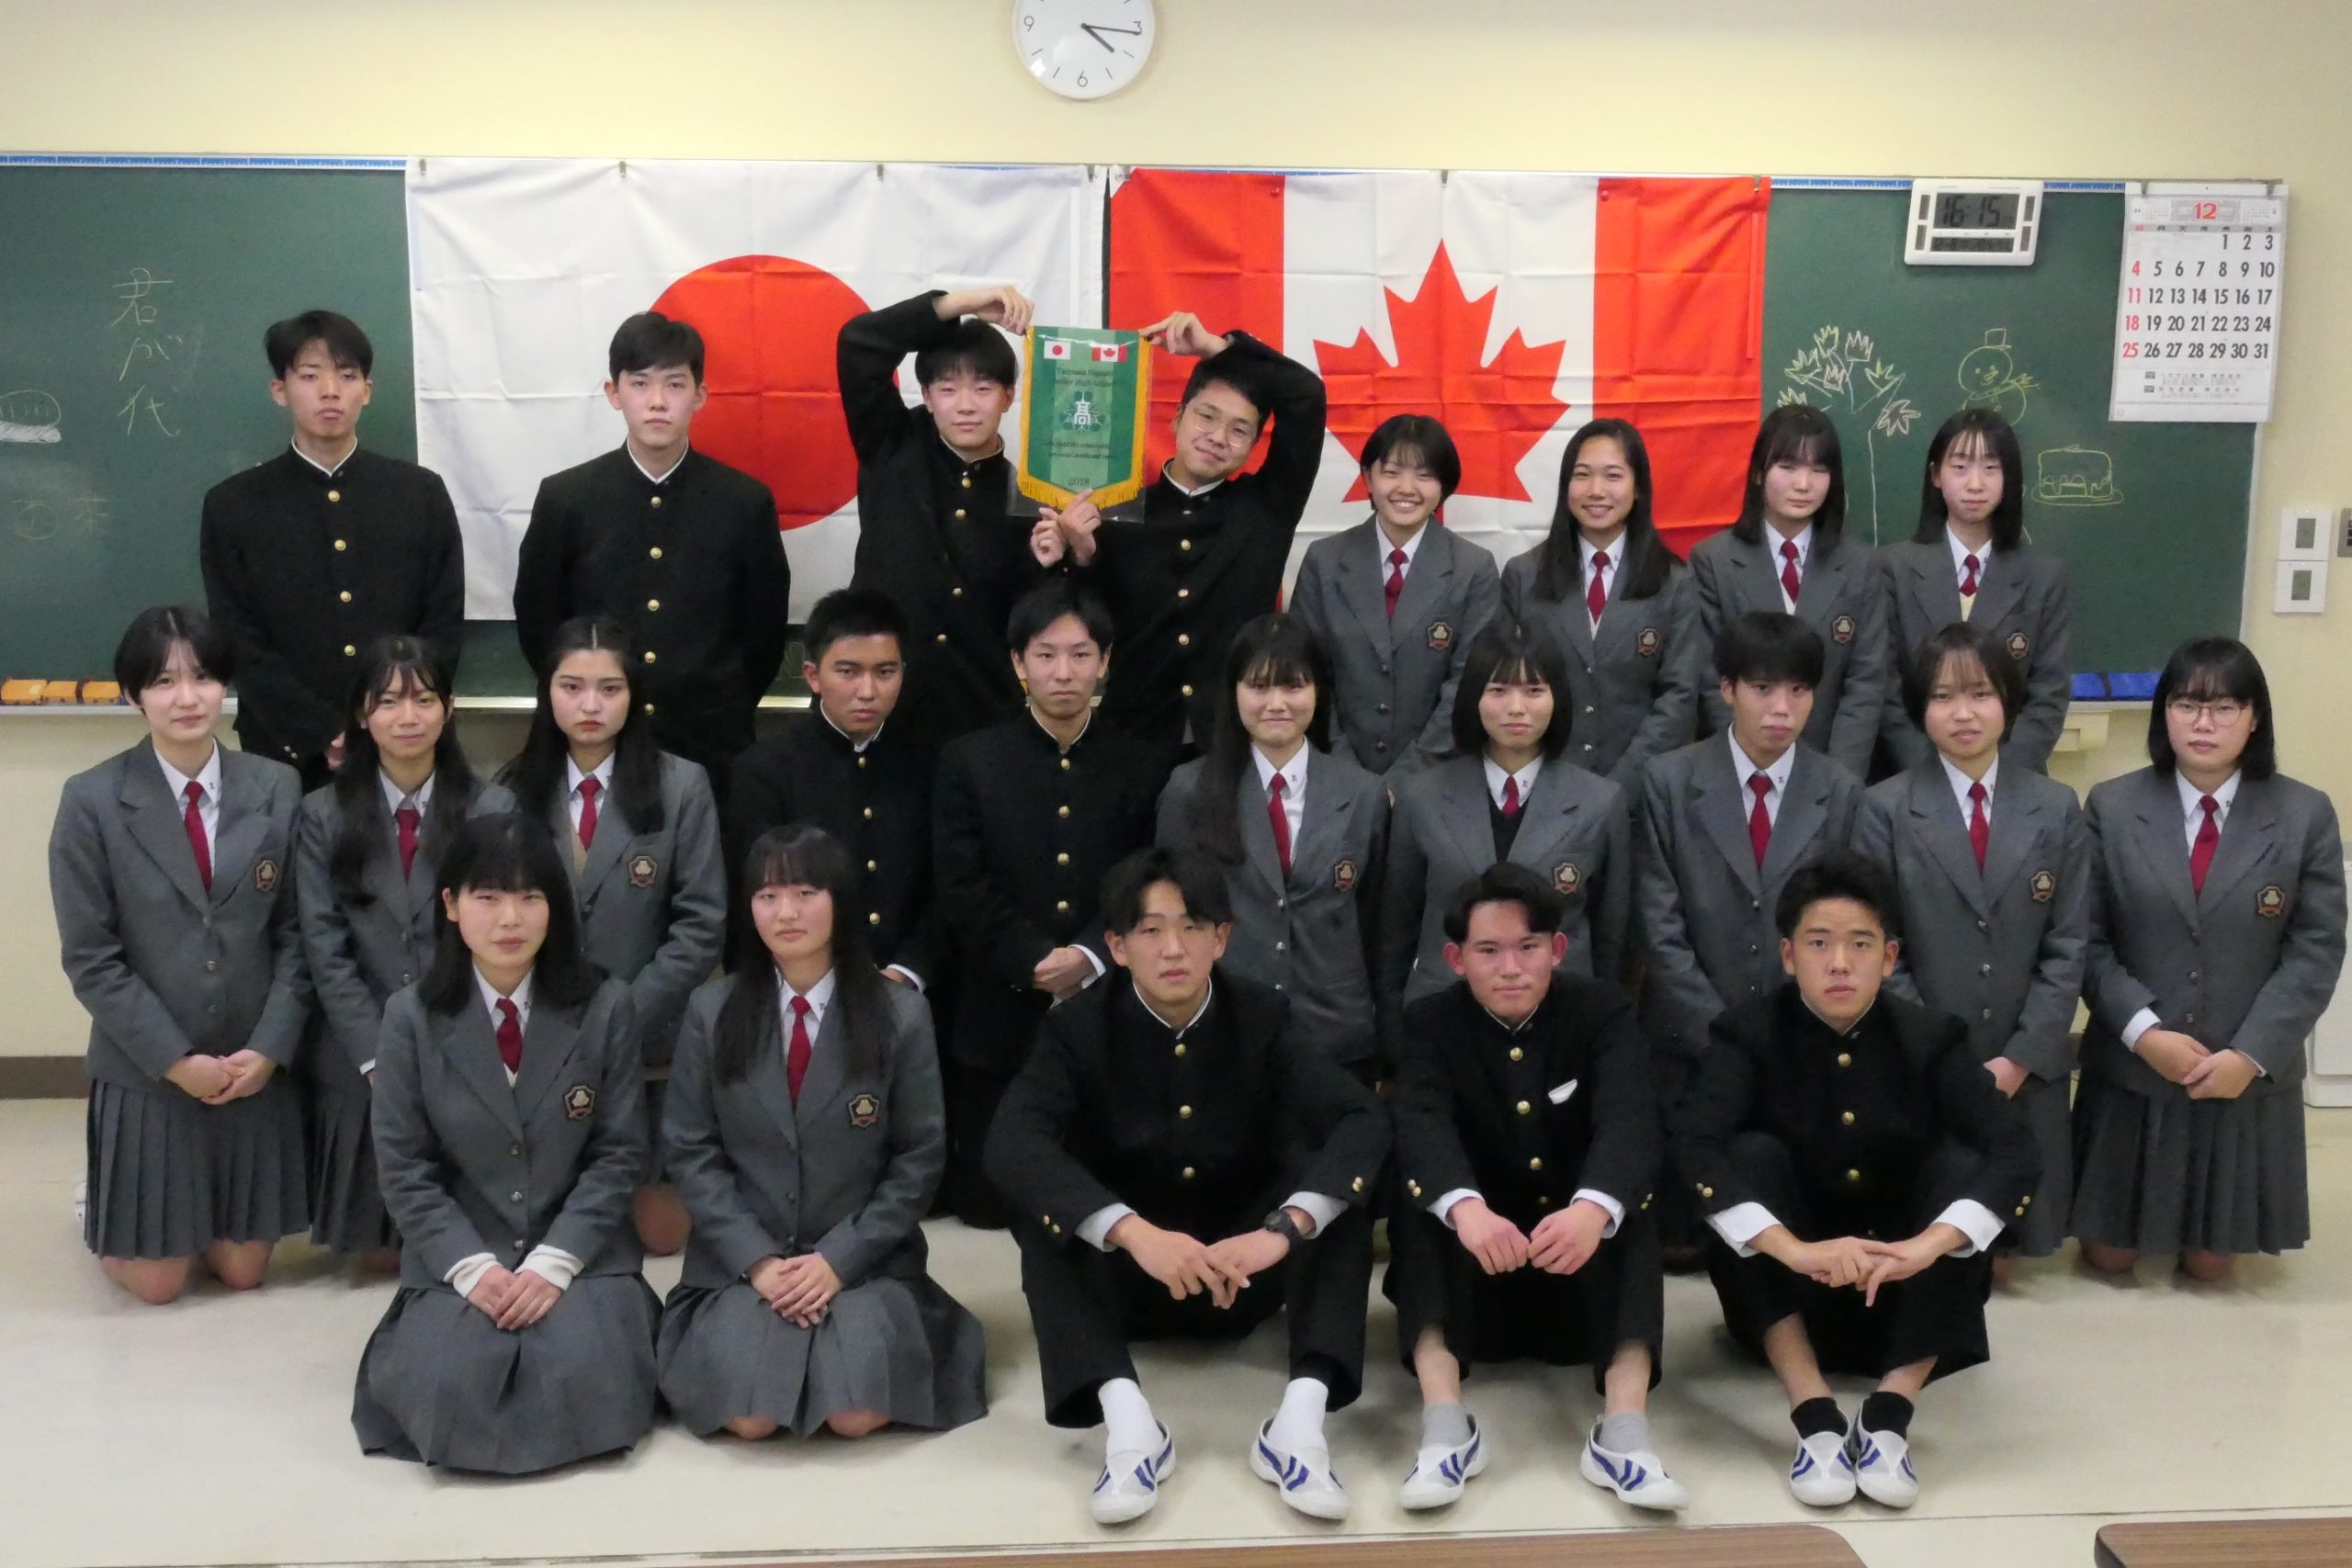 津山東高校 短期英語研修でカナダに向かう生徒たちの団結式